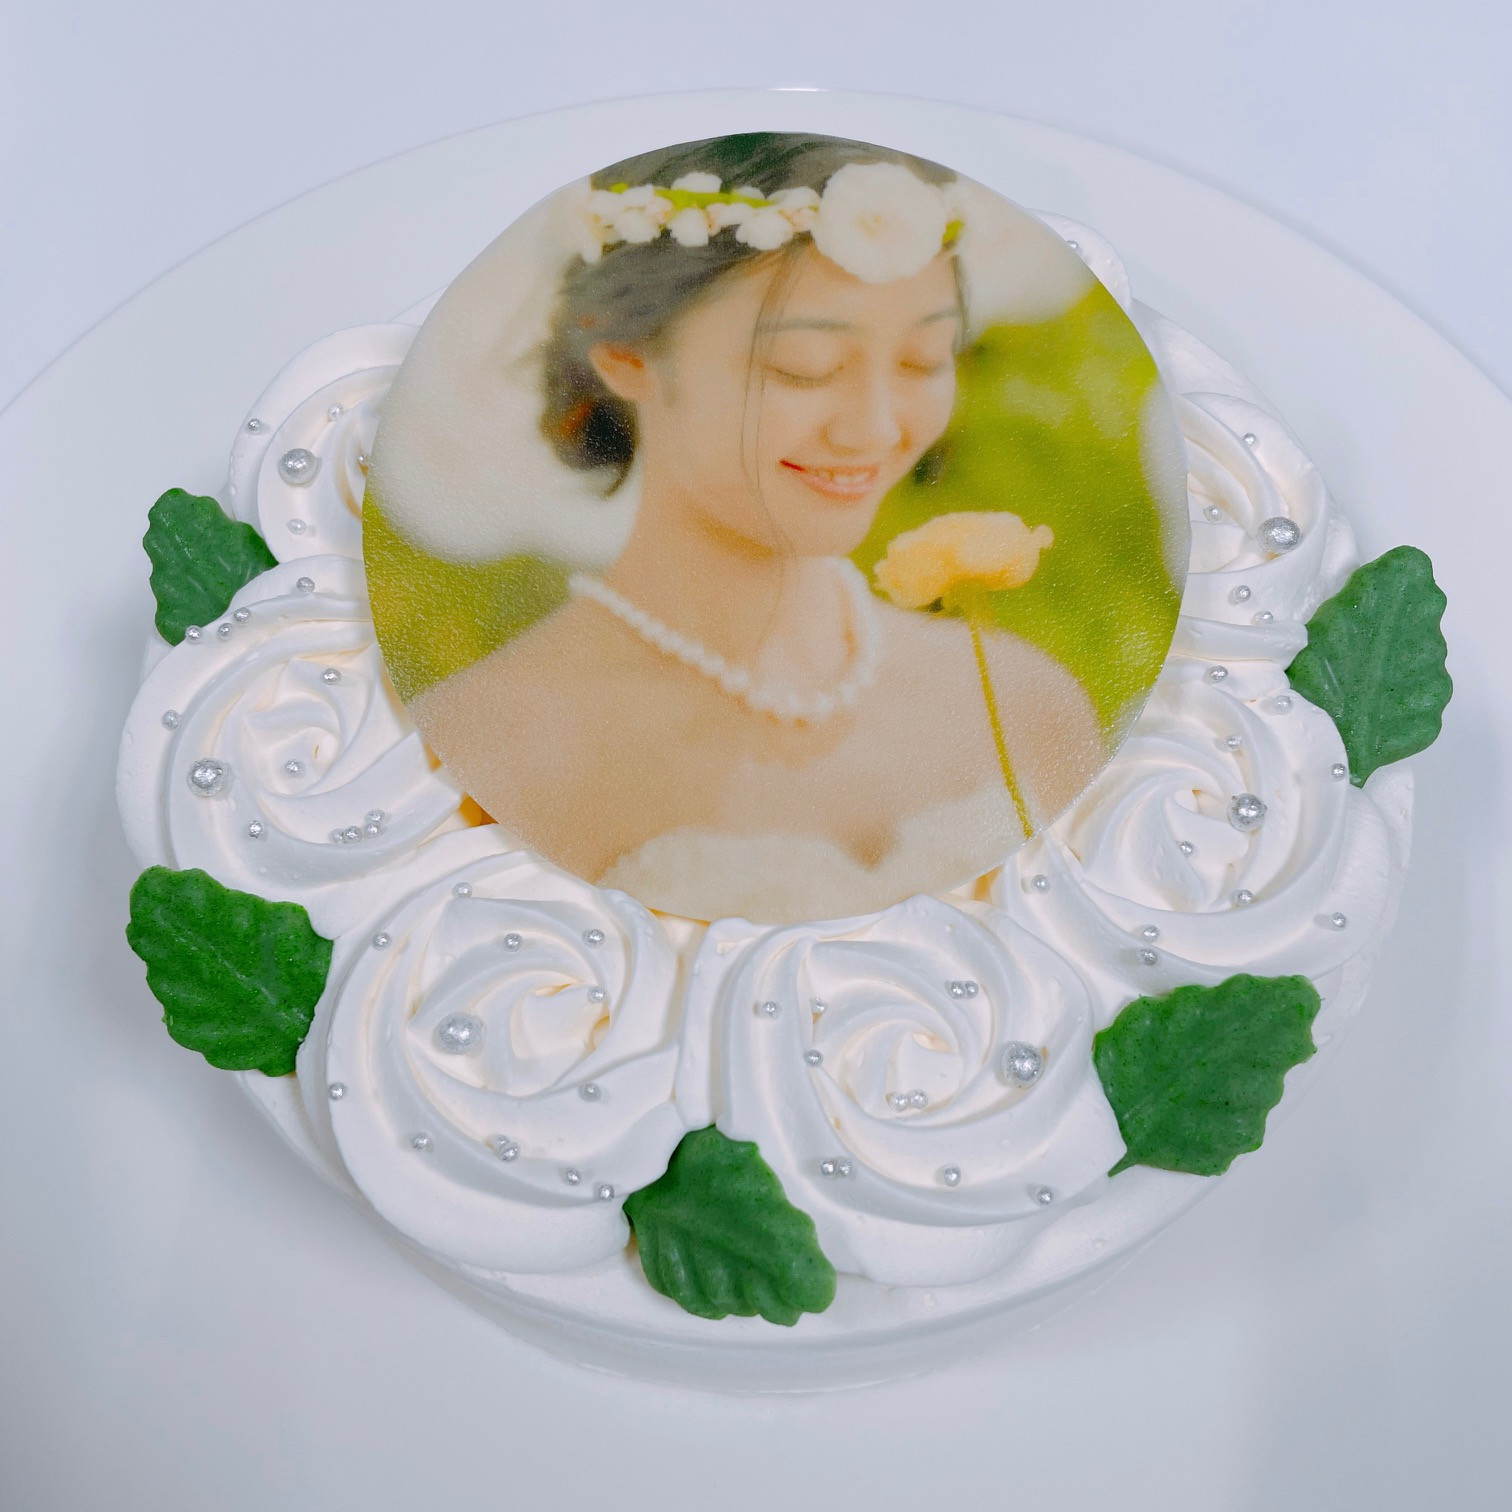 【9色から選べる♪】イメージカラーのフラワー写真ケーキ 14.5cm 4～5名様向け 6